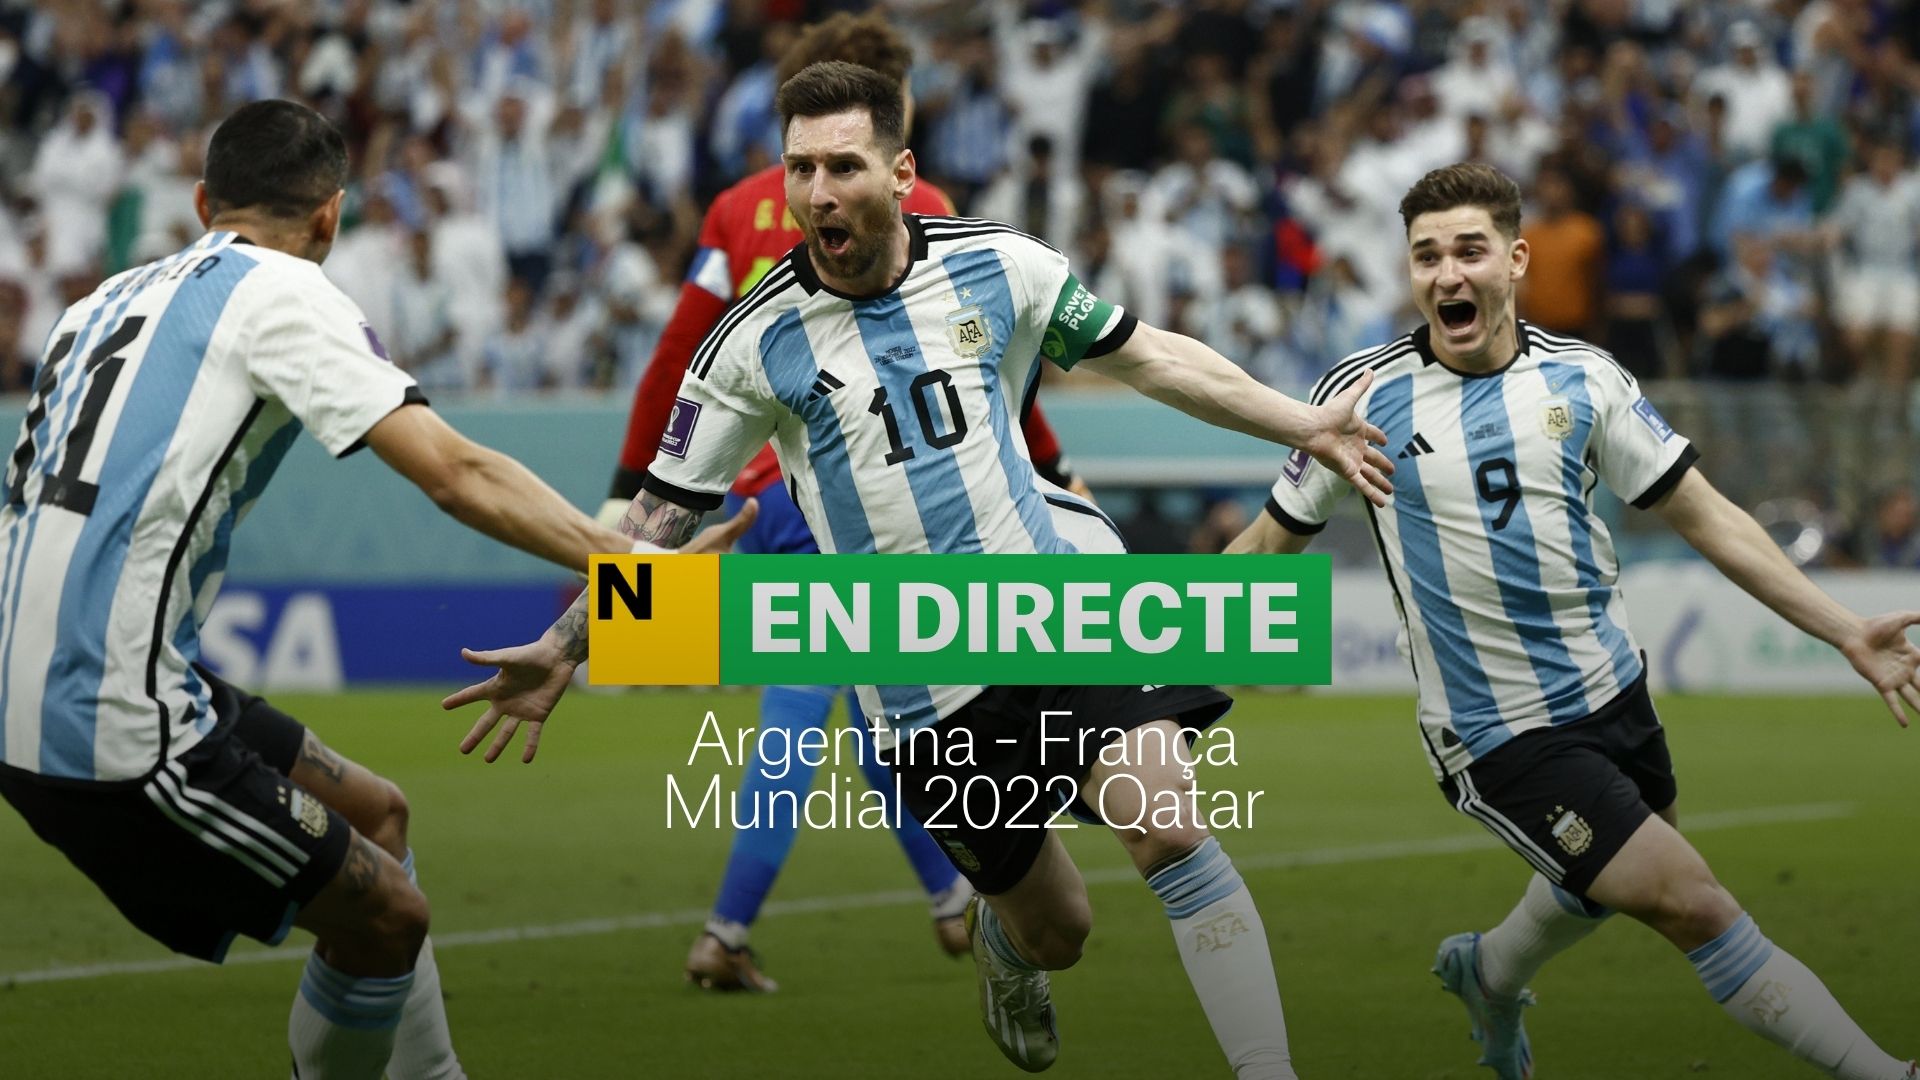 Argentina-França del Mundial 2022 | DIRECTE: últims minuts de la pròrroga